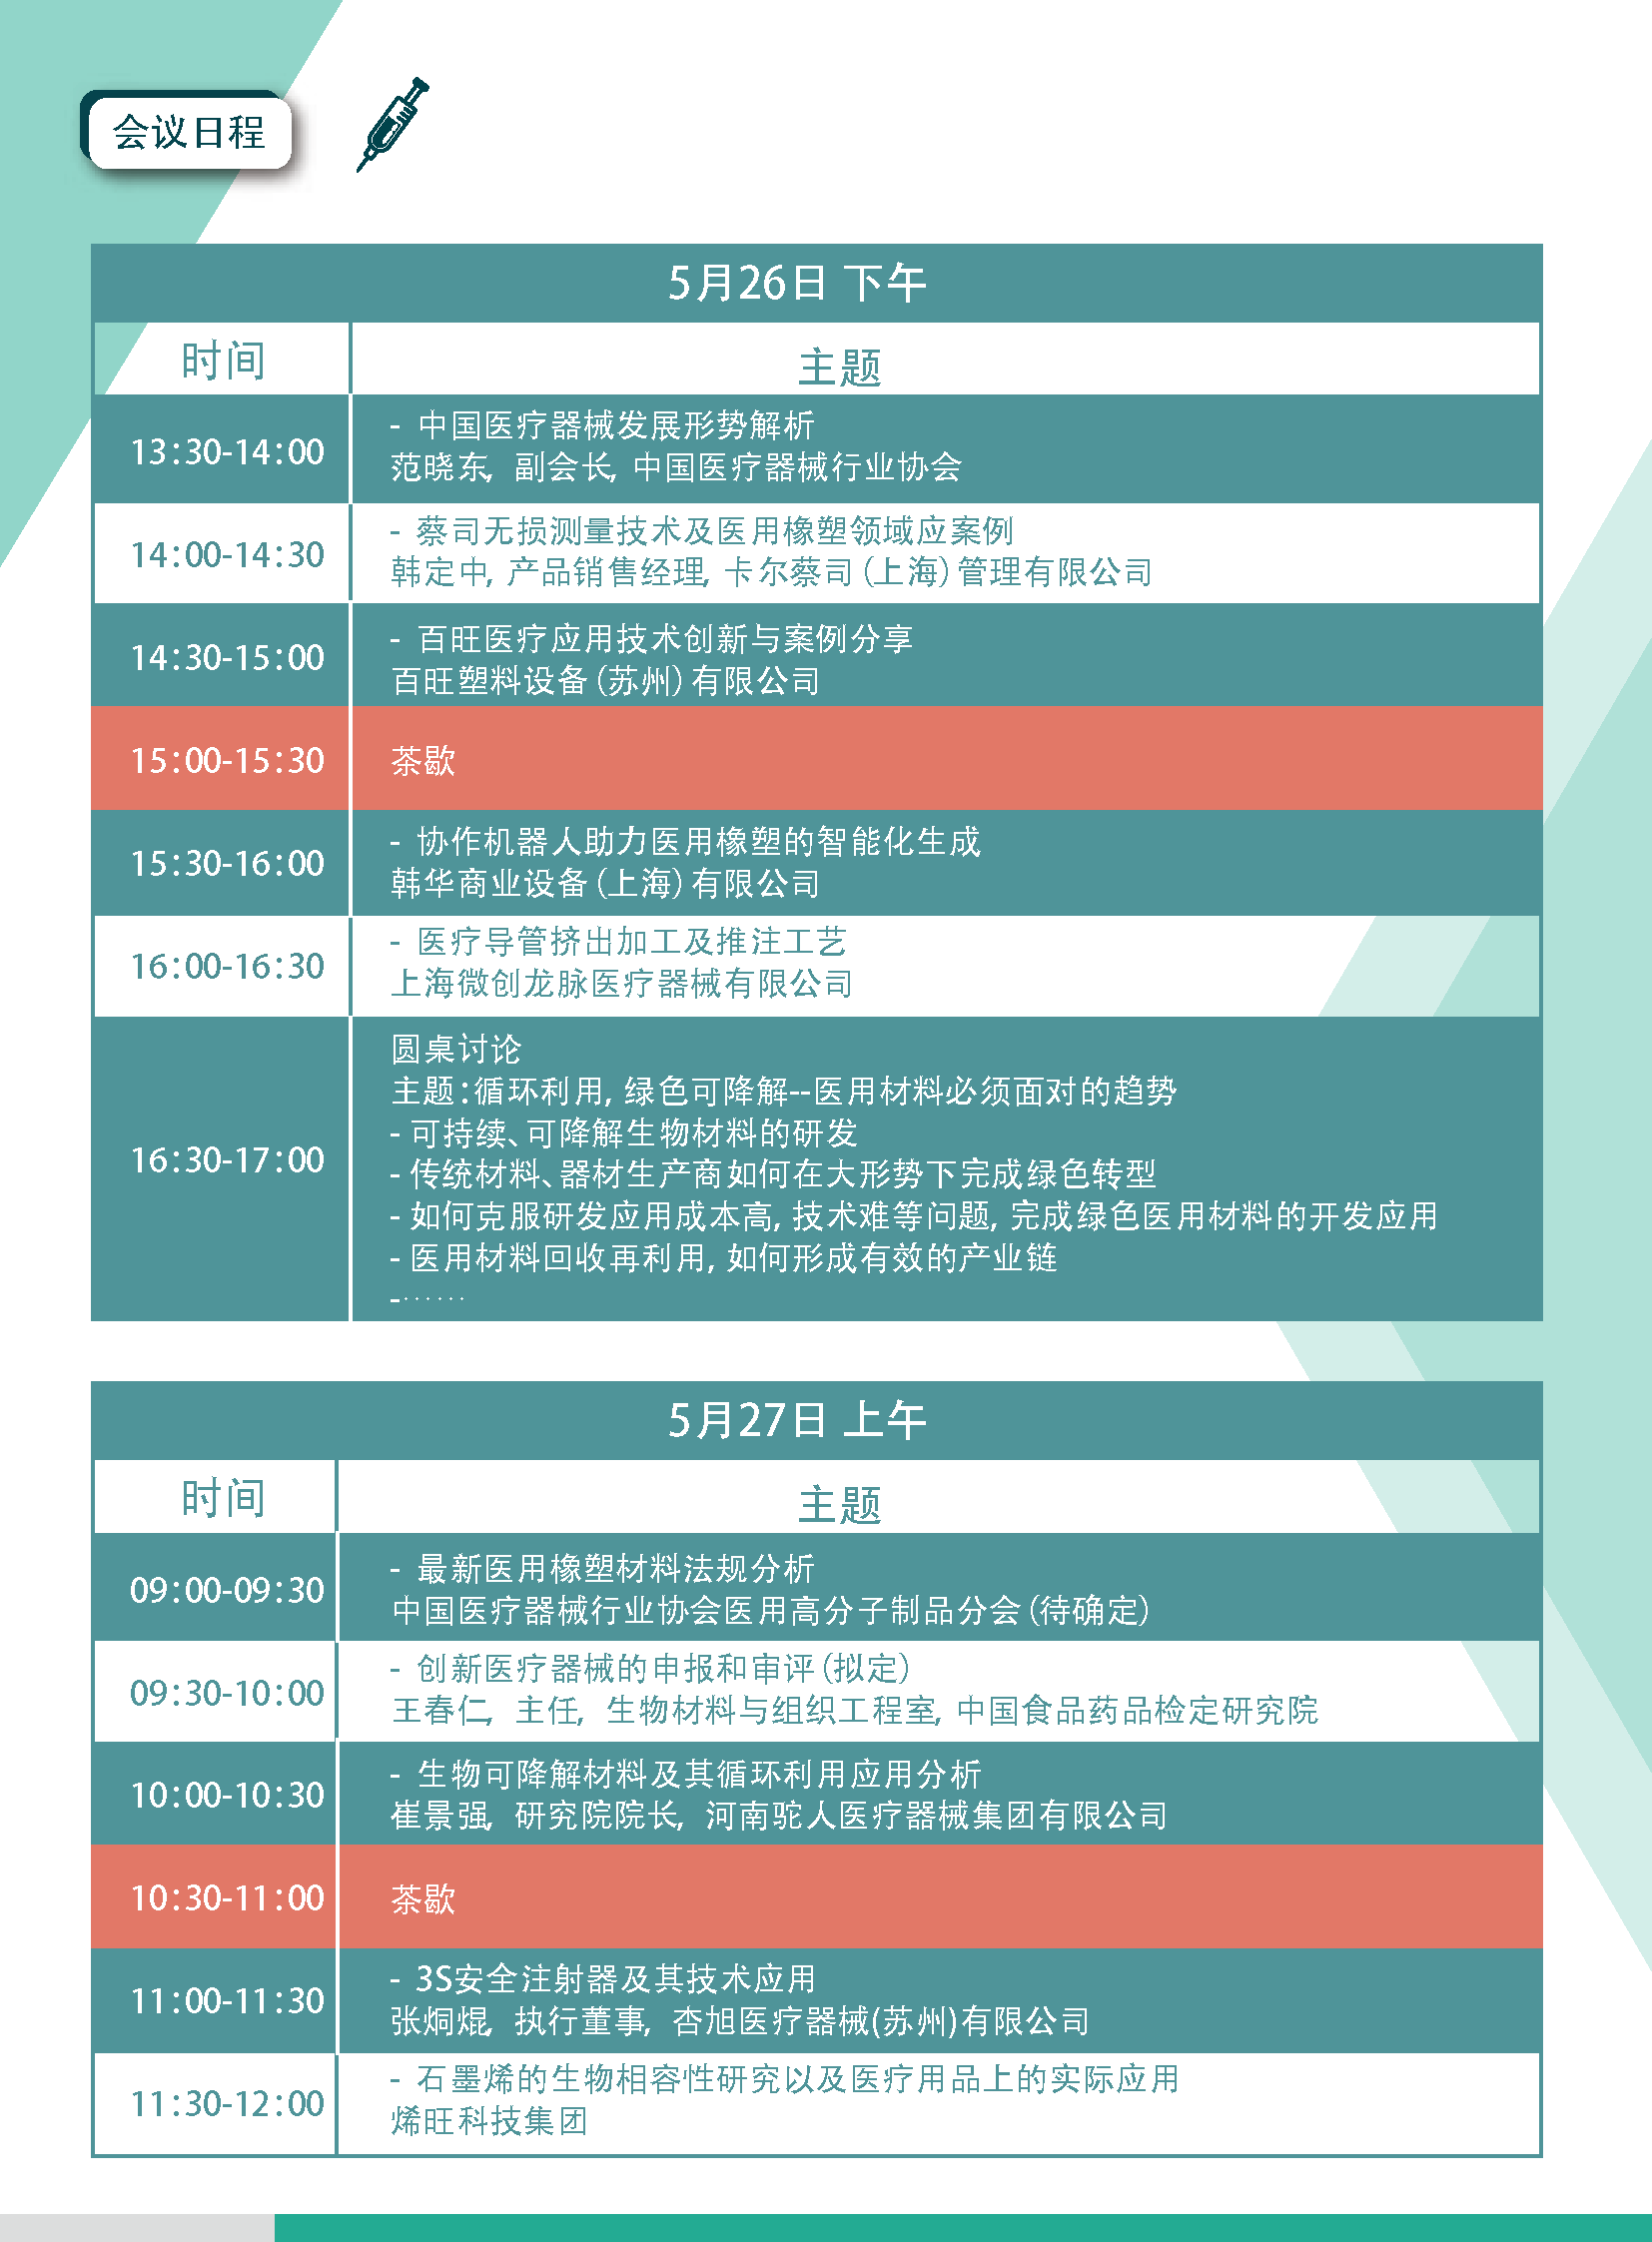 2020橡塑创新材料应用及加工技术高峰论坛（上海）